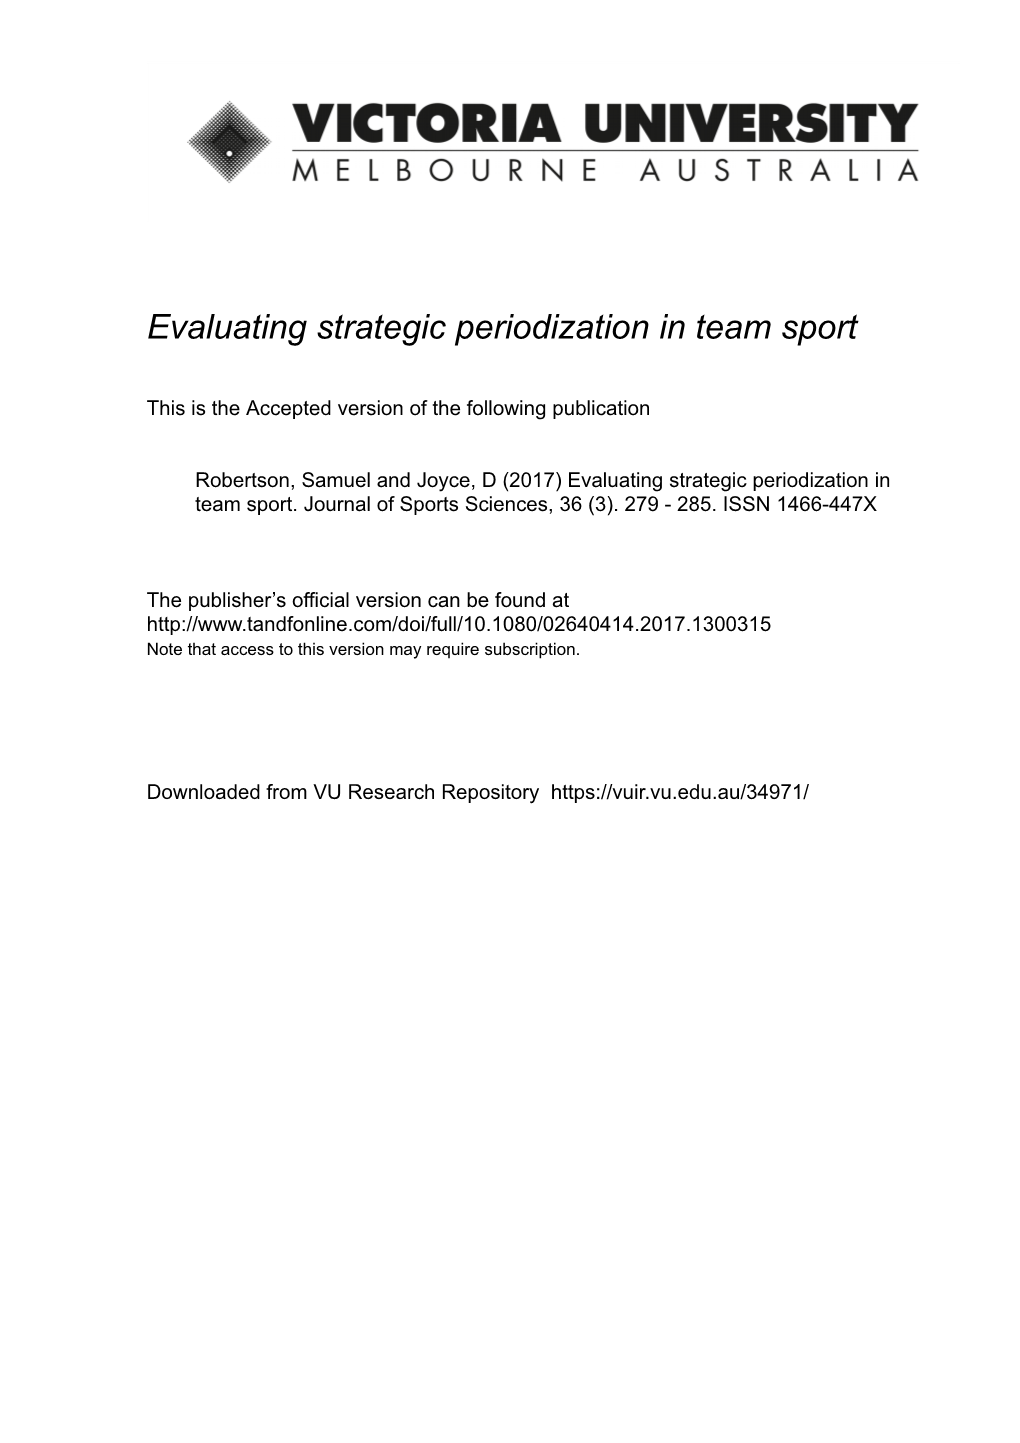 Evaluating Strategic Periodisation in Team Sport